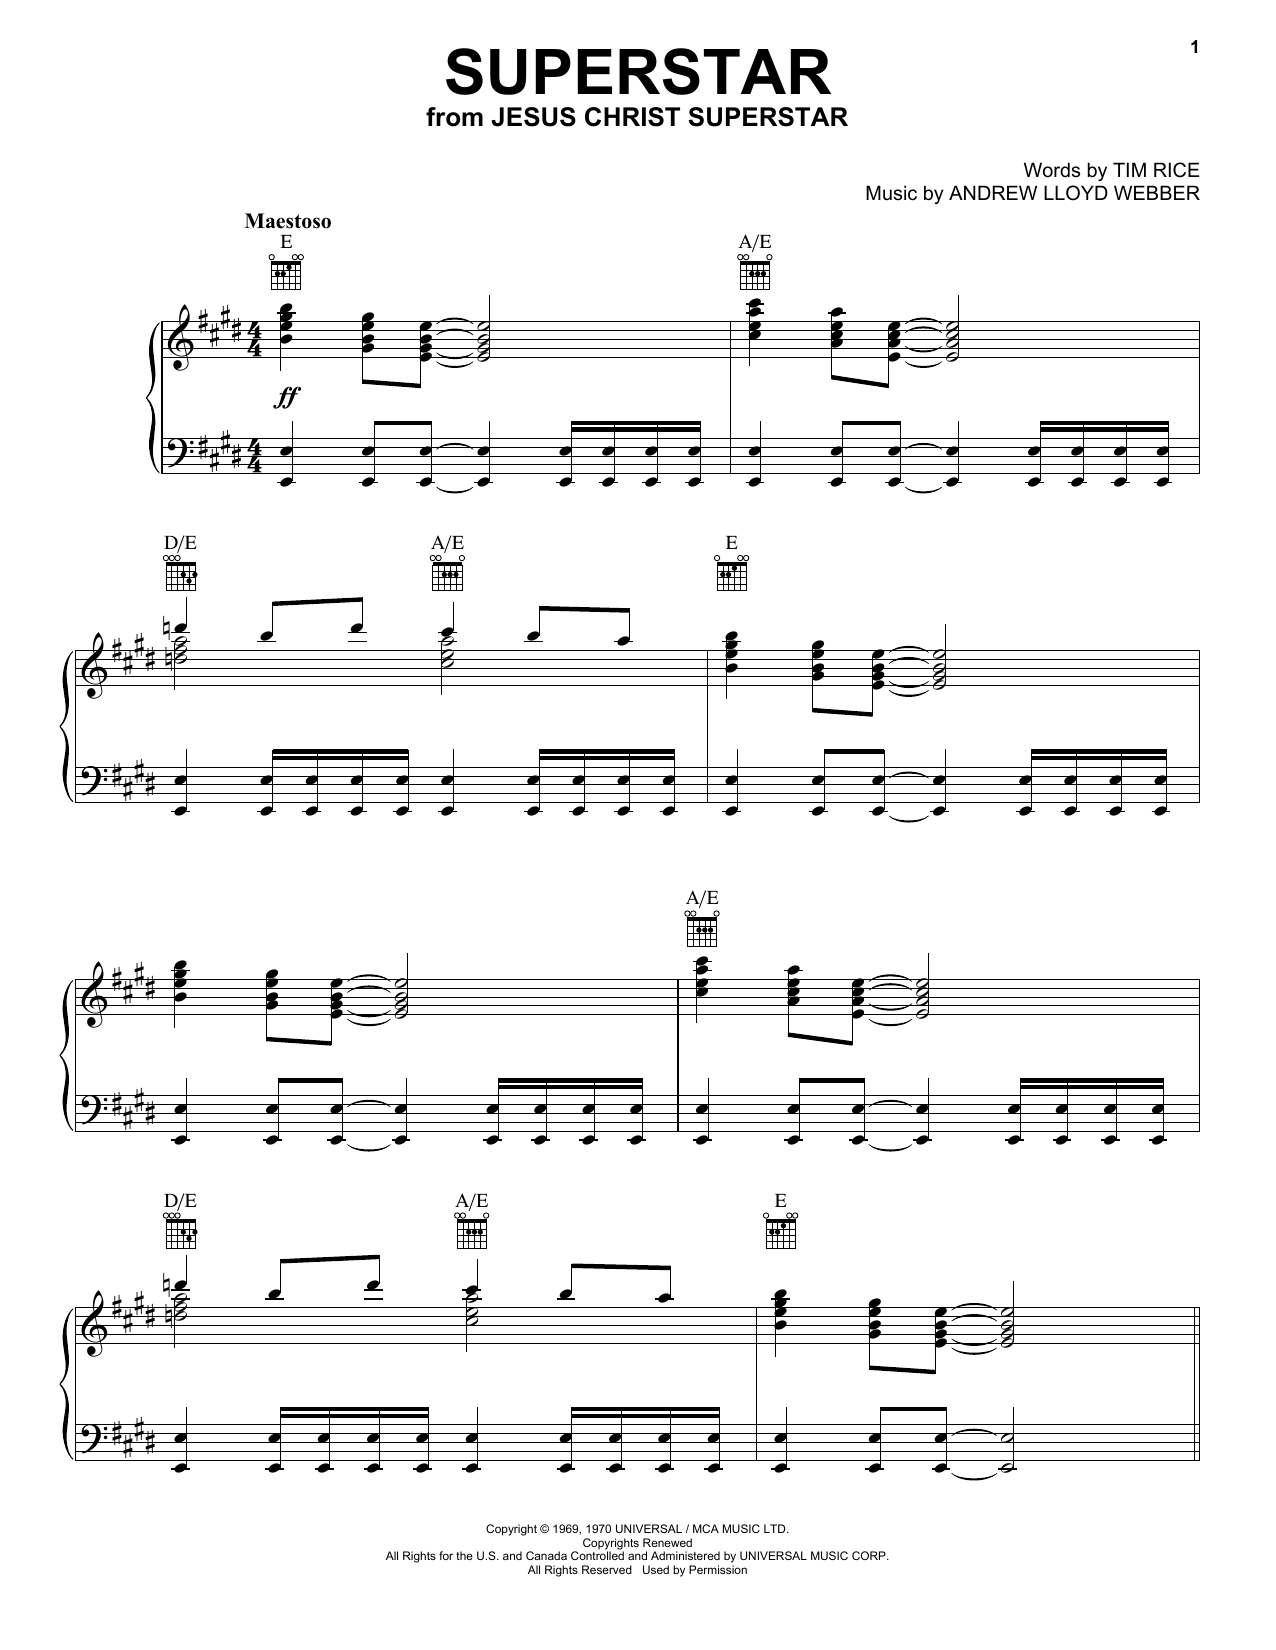 Andrew Lloyd Webber Superstar (from Jesus Christ Superstar) Sheet Music Notes & Chords for Violin - Download or Print PDF